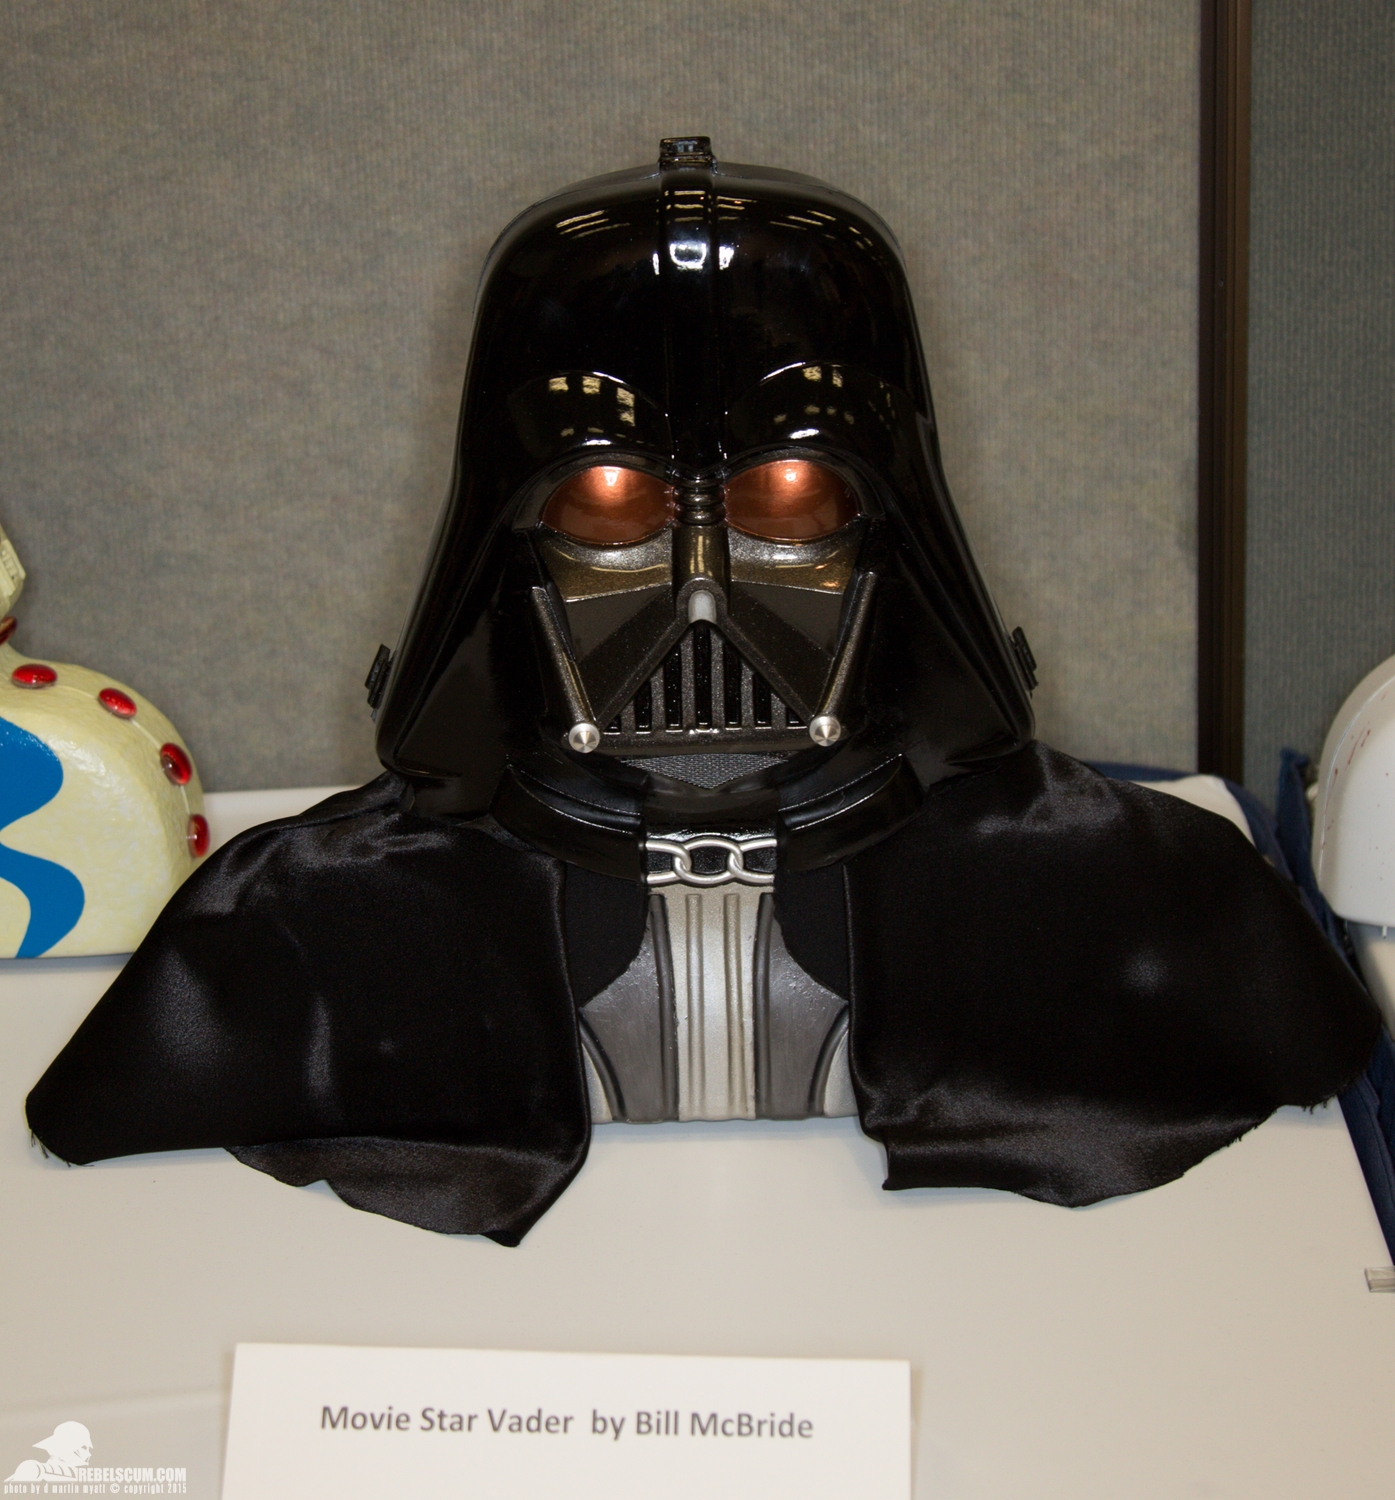 Star-Wars-Celebration-Anaheim-2015-Darth-Vader-Case-Project-002.jpg